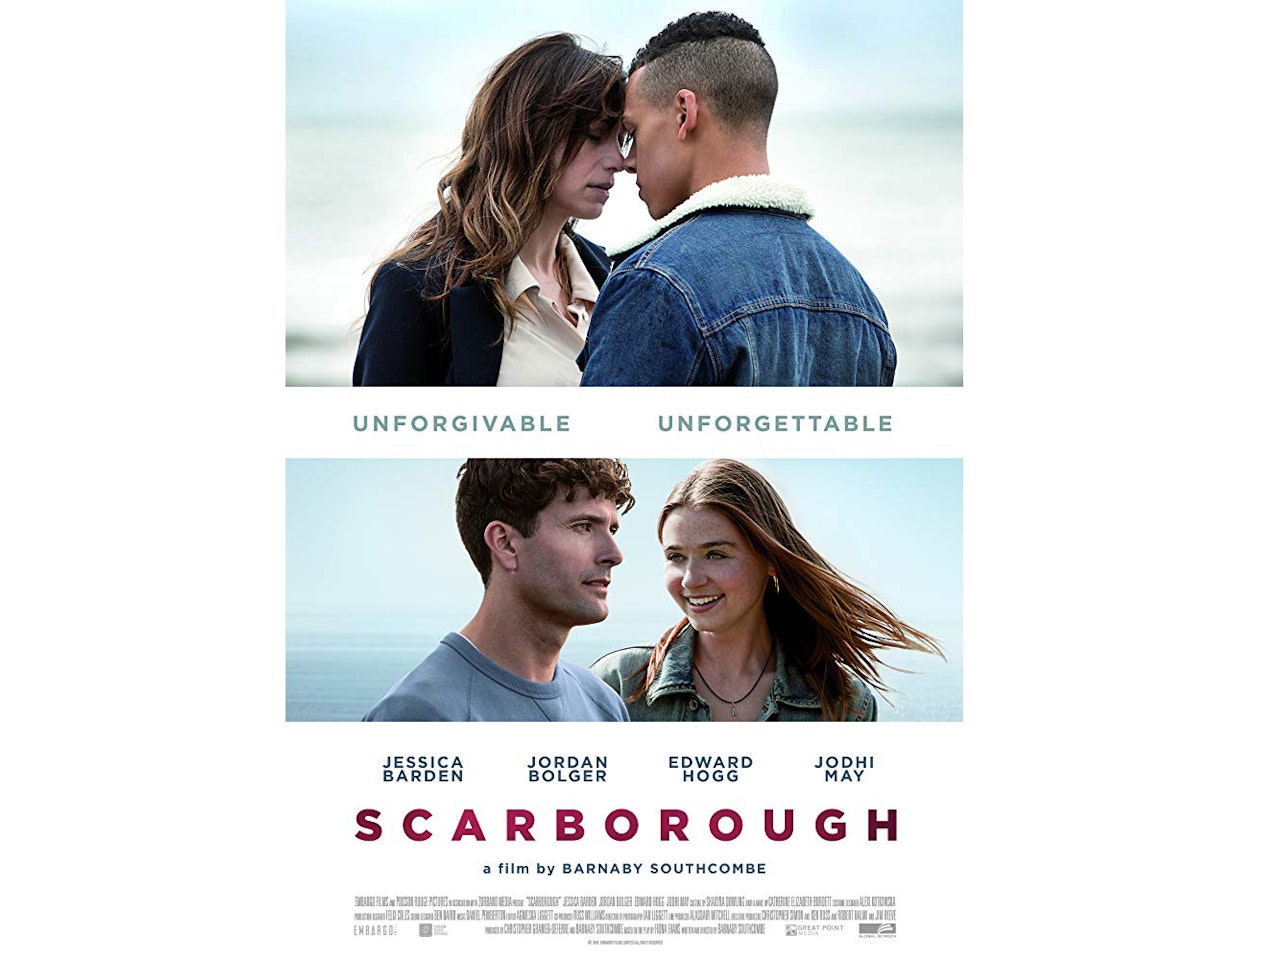 SCARBOROUGH - movie trailer